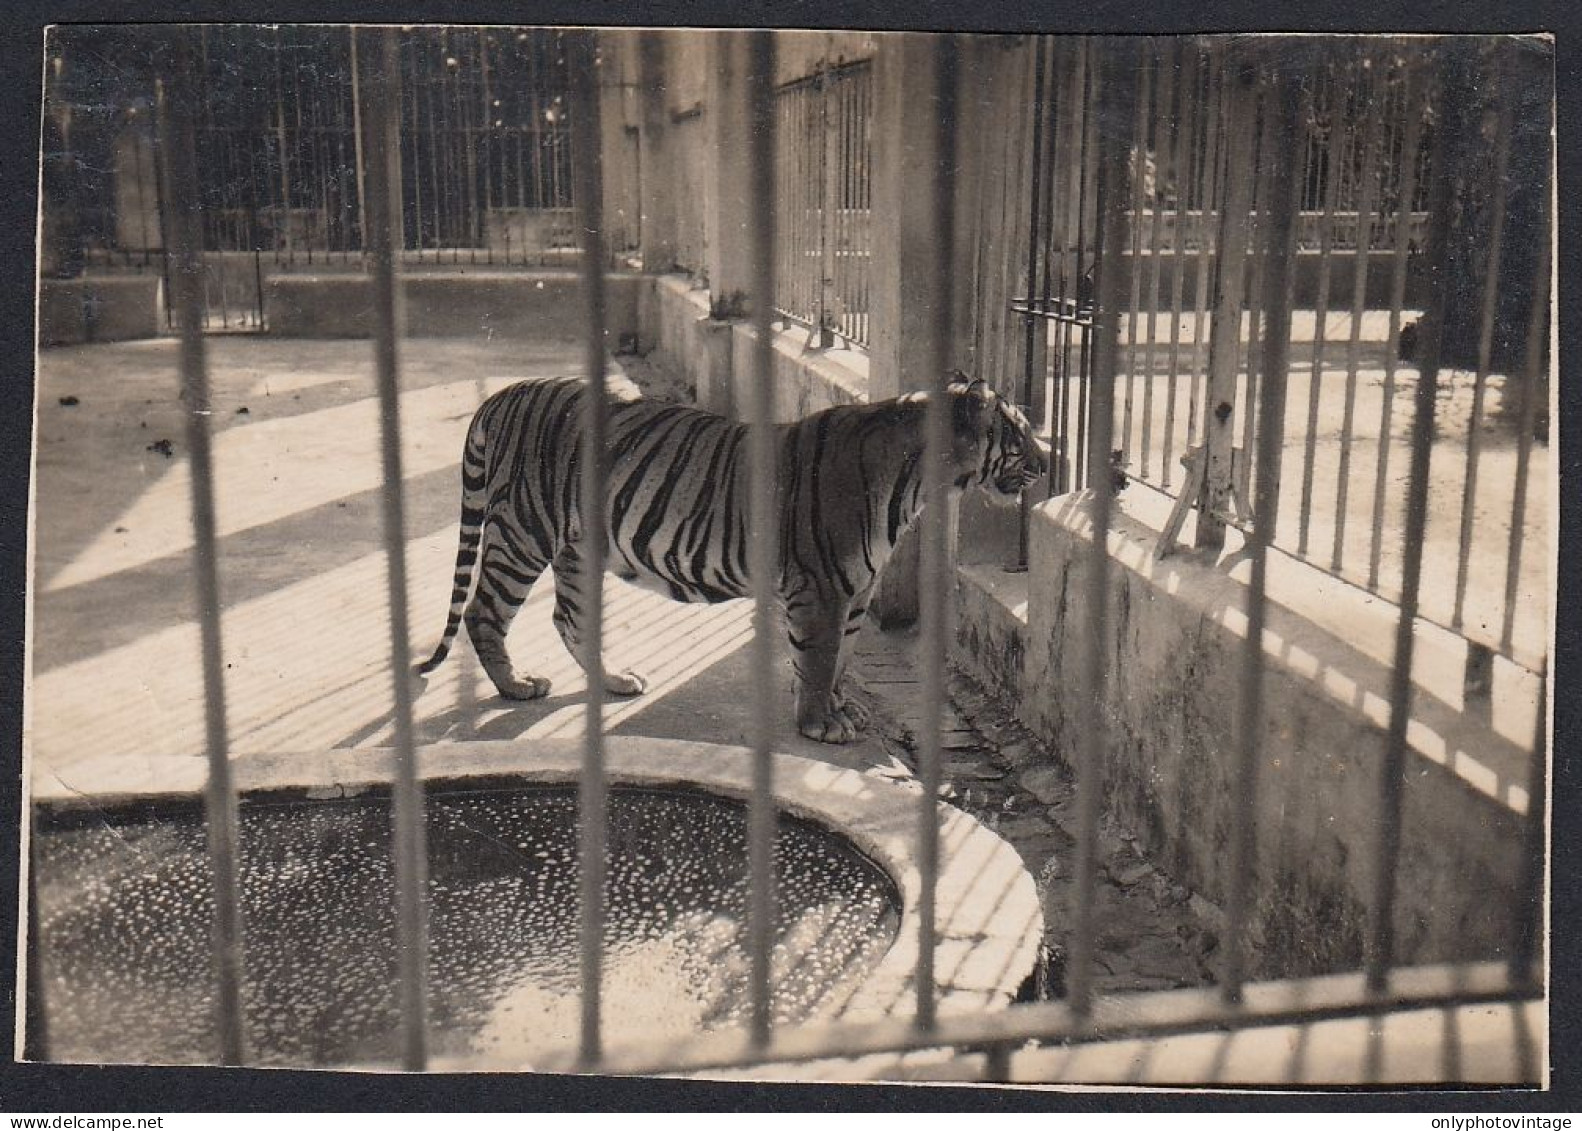 Tigre Nel Recinto Di Uno Zoo - 1940 Fotografia D'epoca - Vintage Photo - Places